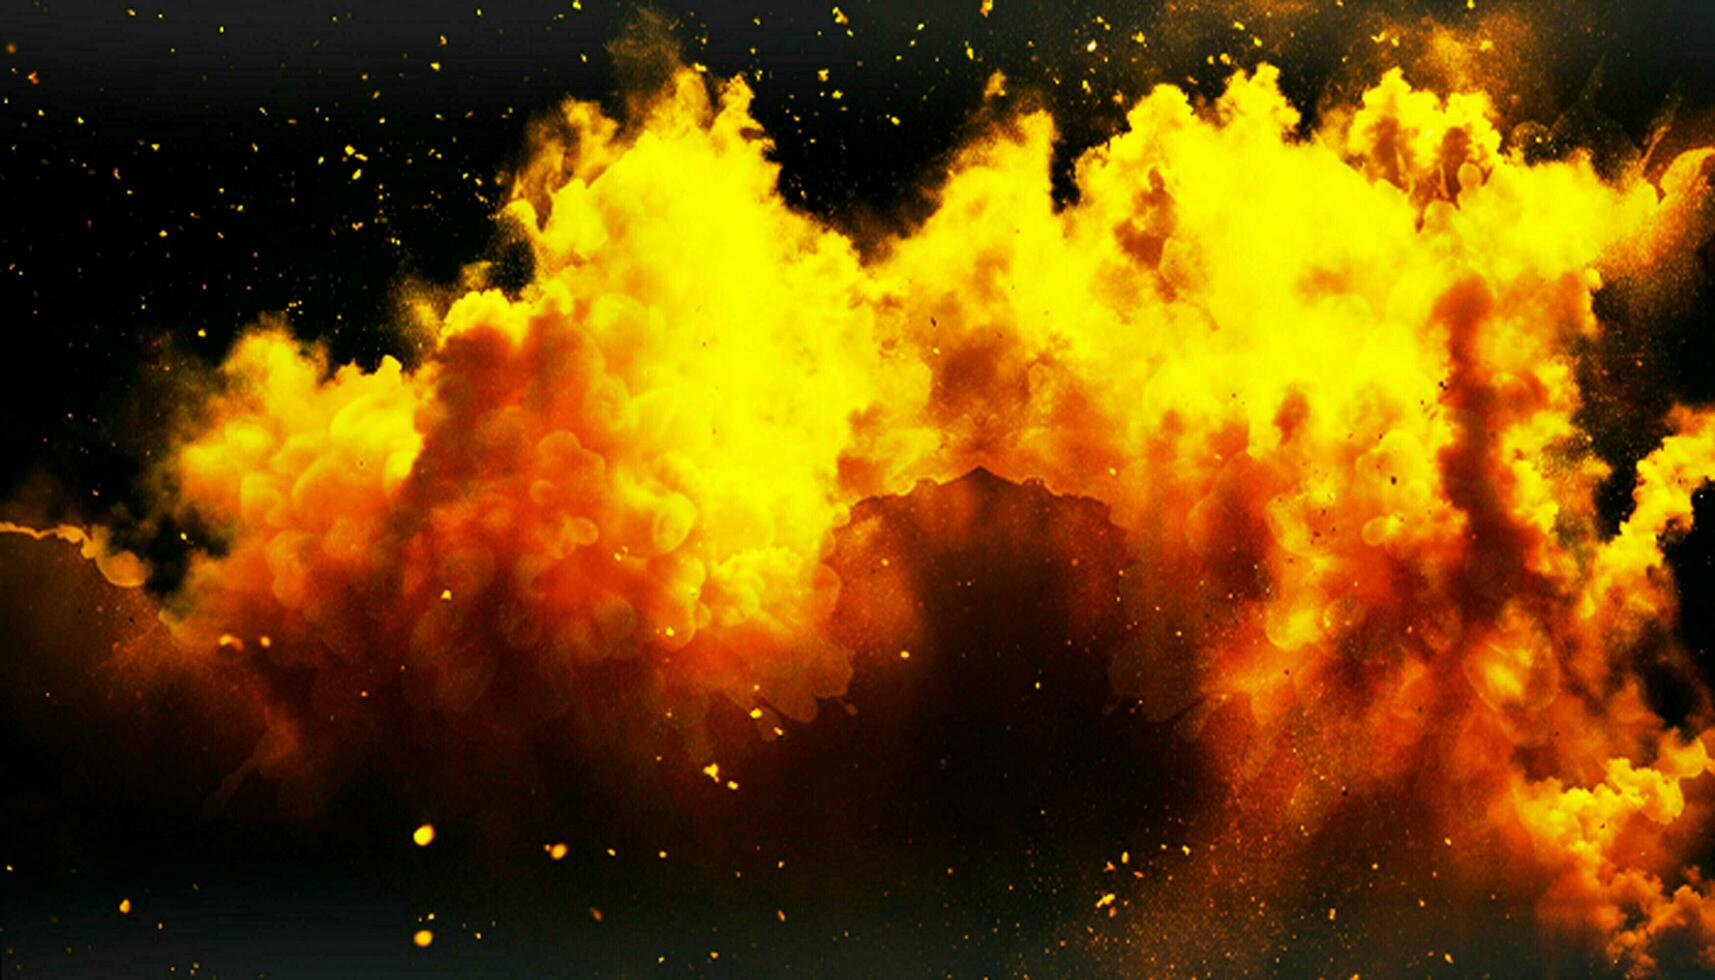 inkt rook magie explosie poeder splatted oranje stof een zwart abstract texturen wolken achtergrond foto